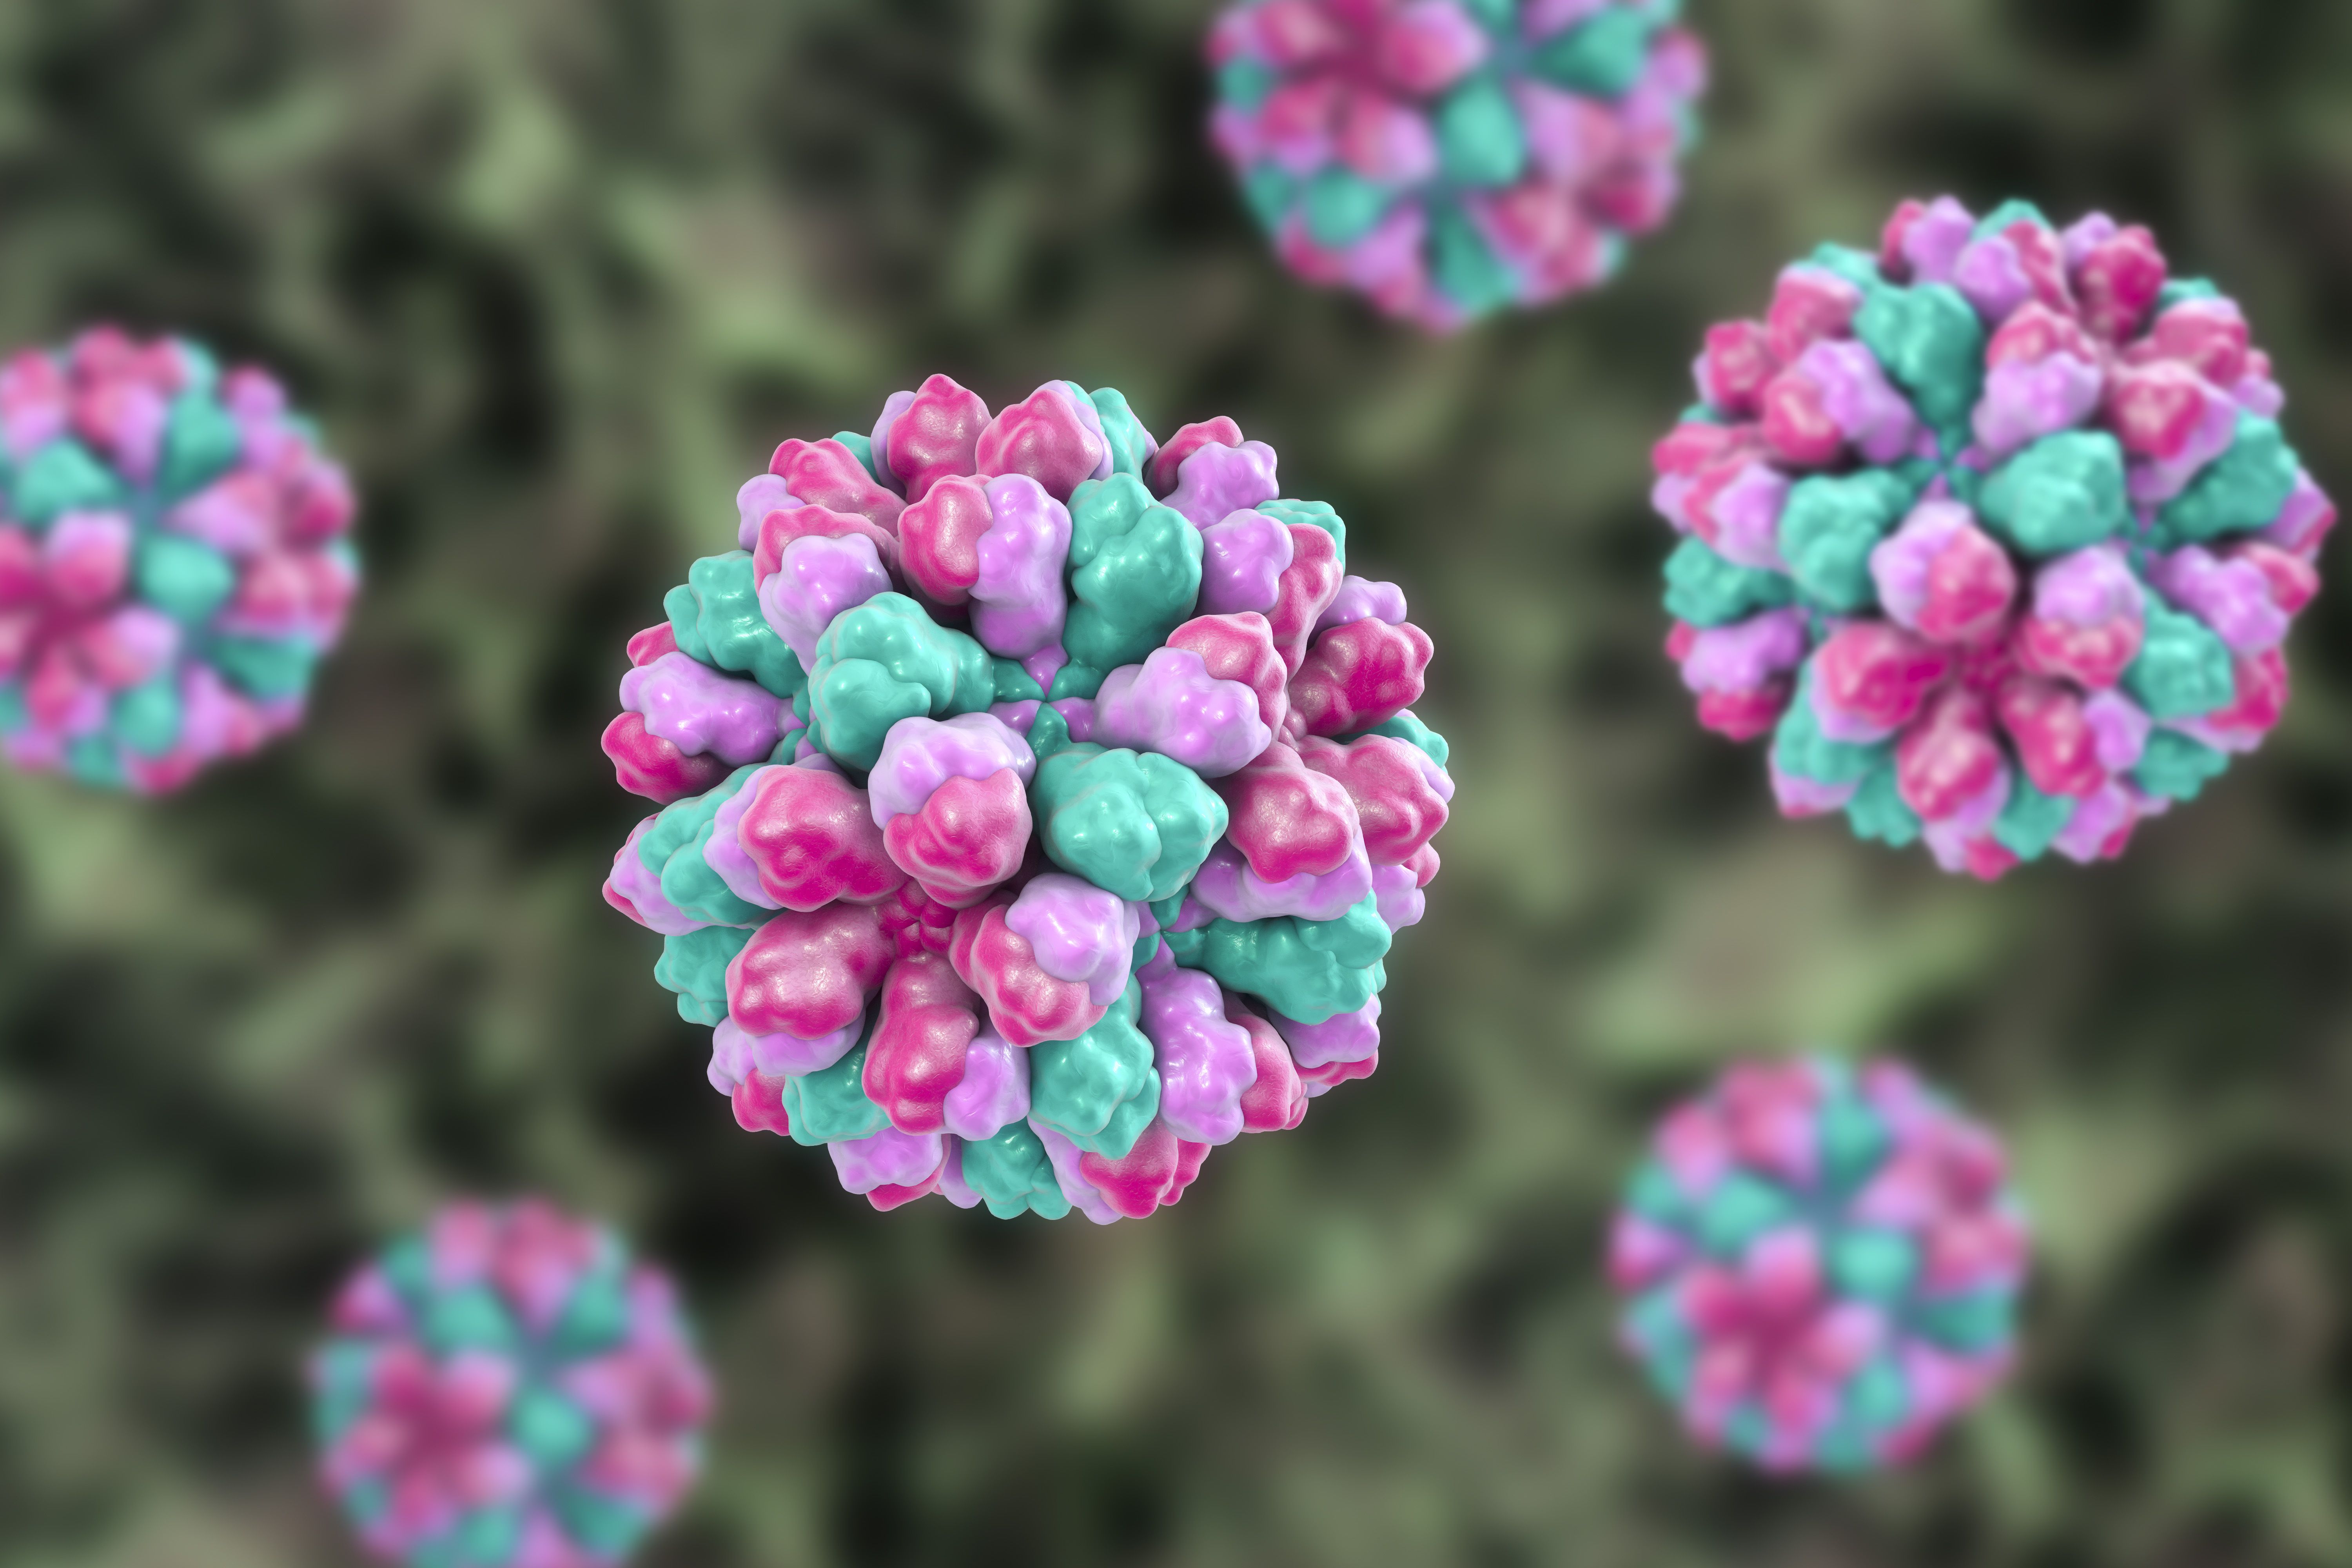 El norovirus vuelve a propagarse: ¿se puede contraer dos veces? Los expertos opinan